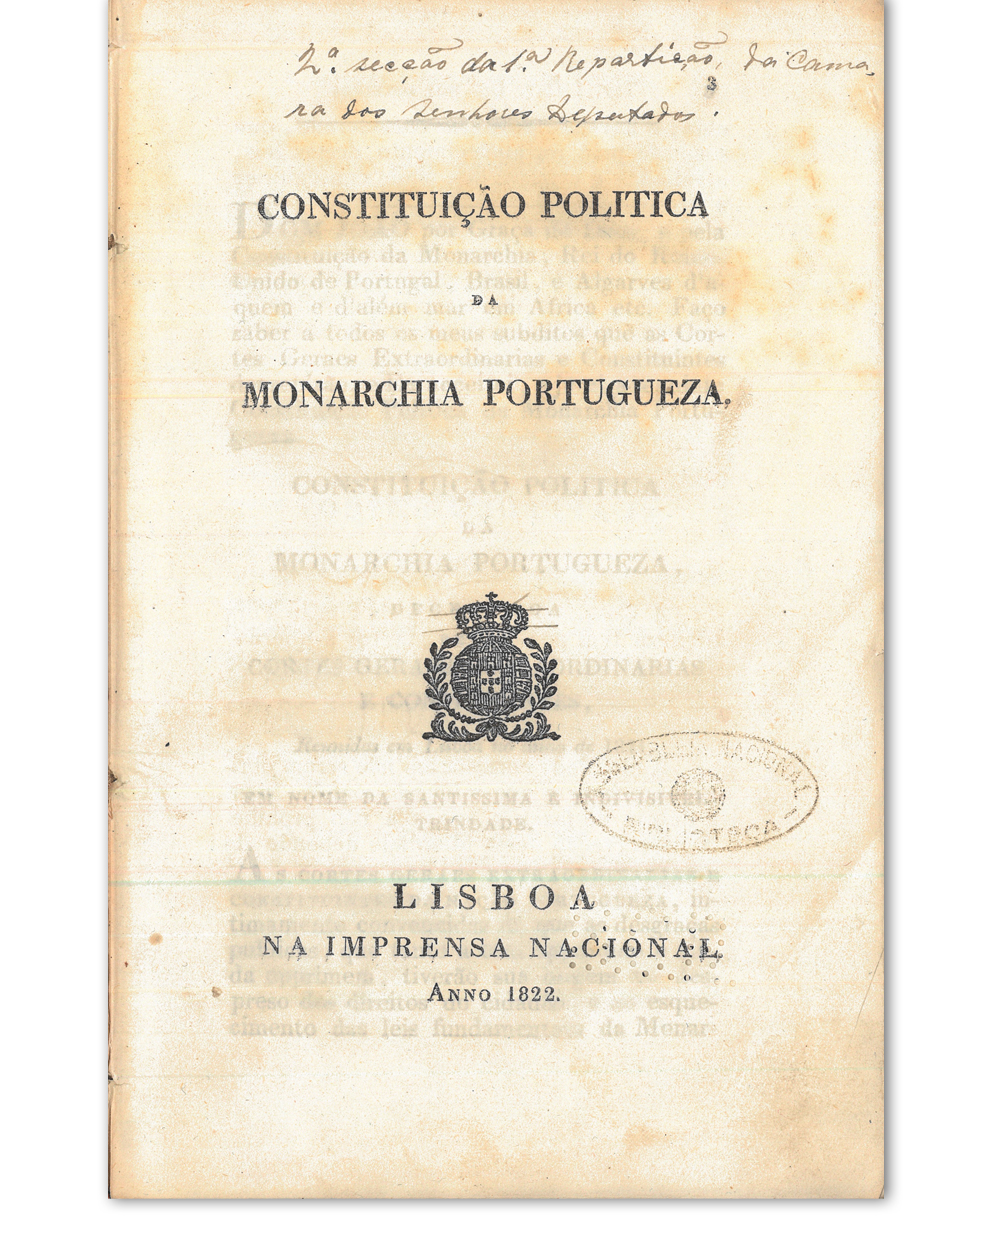 Constituição política da Monarchia Portugueza. Lisboa : Imprensa Nacional, 1822. Cota: 9/1822